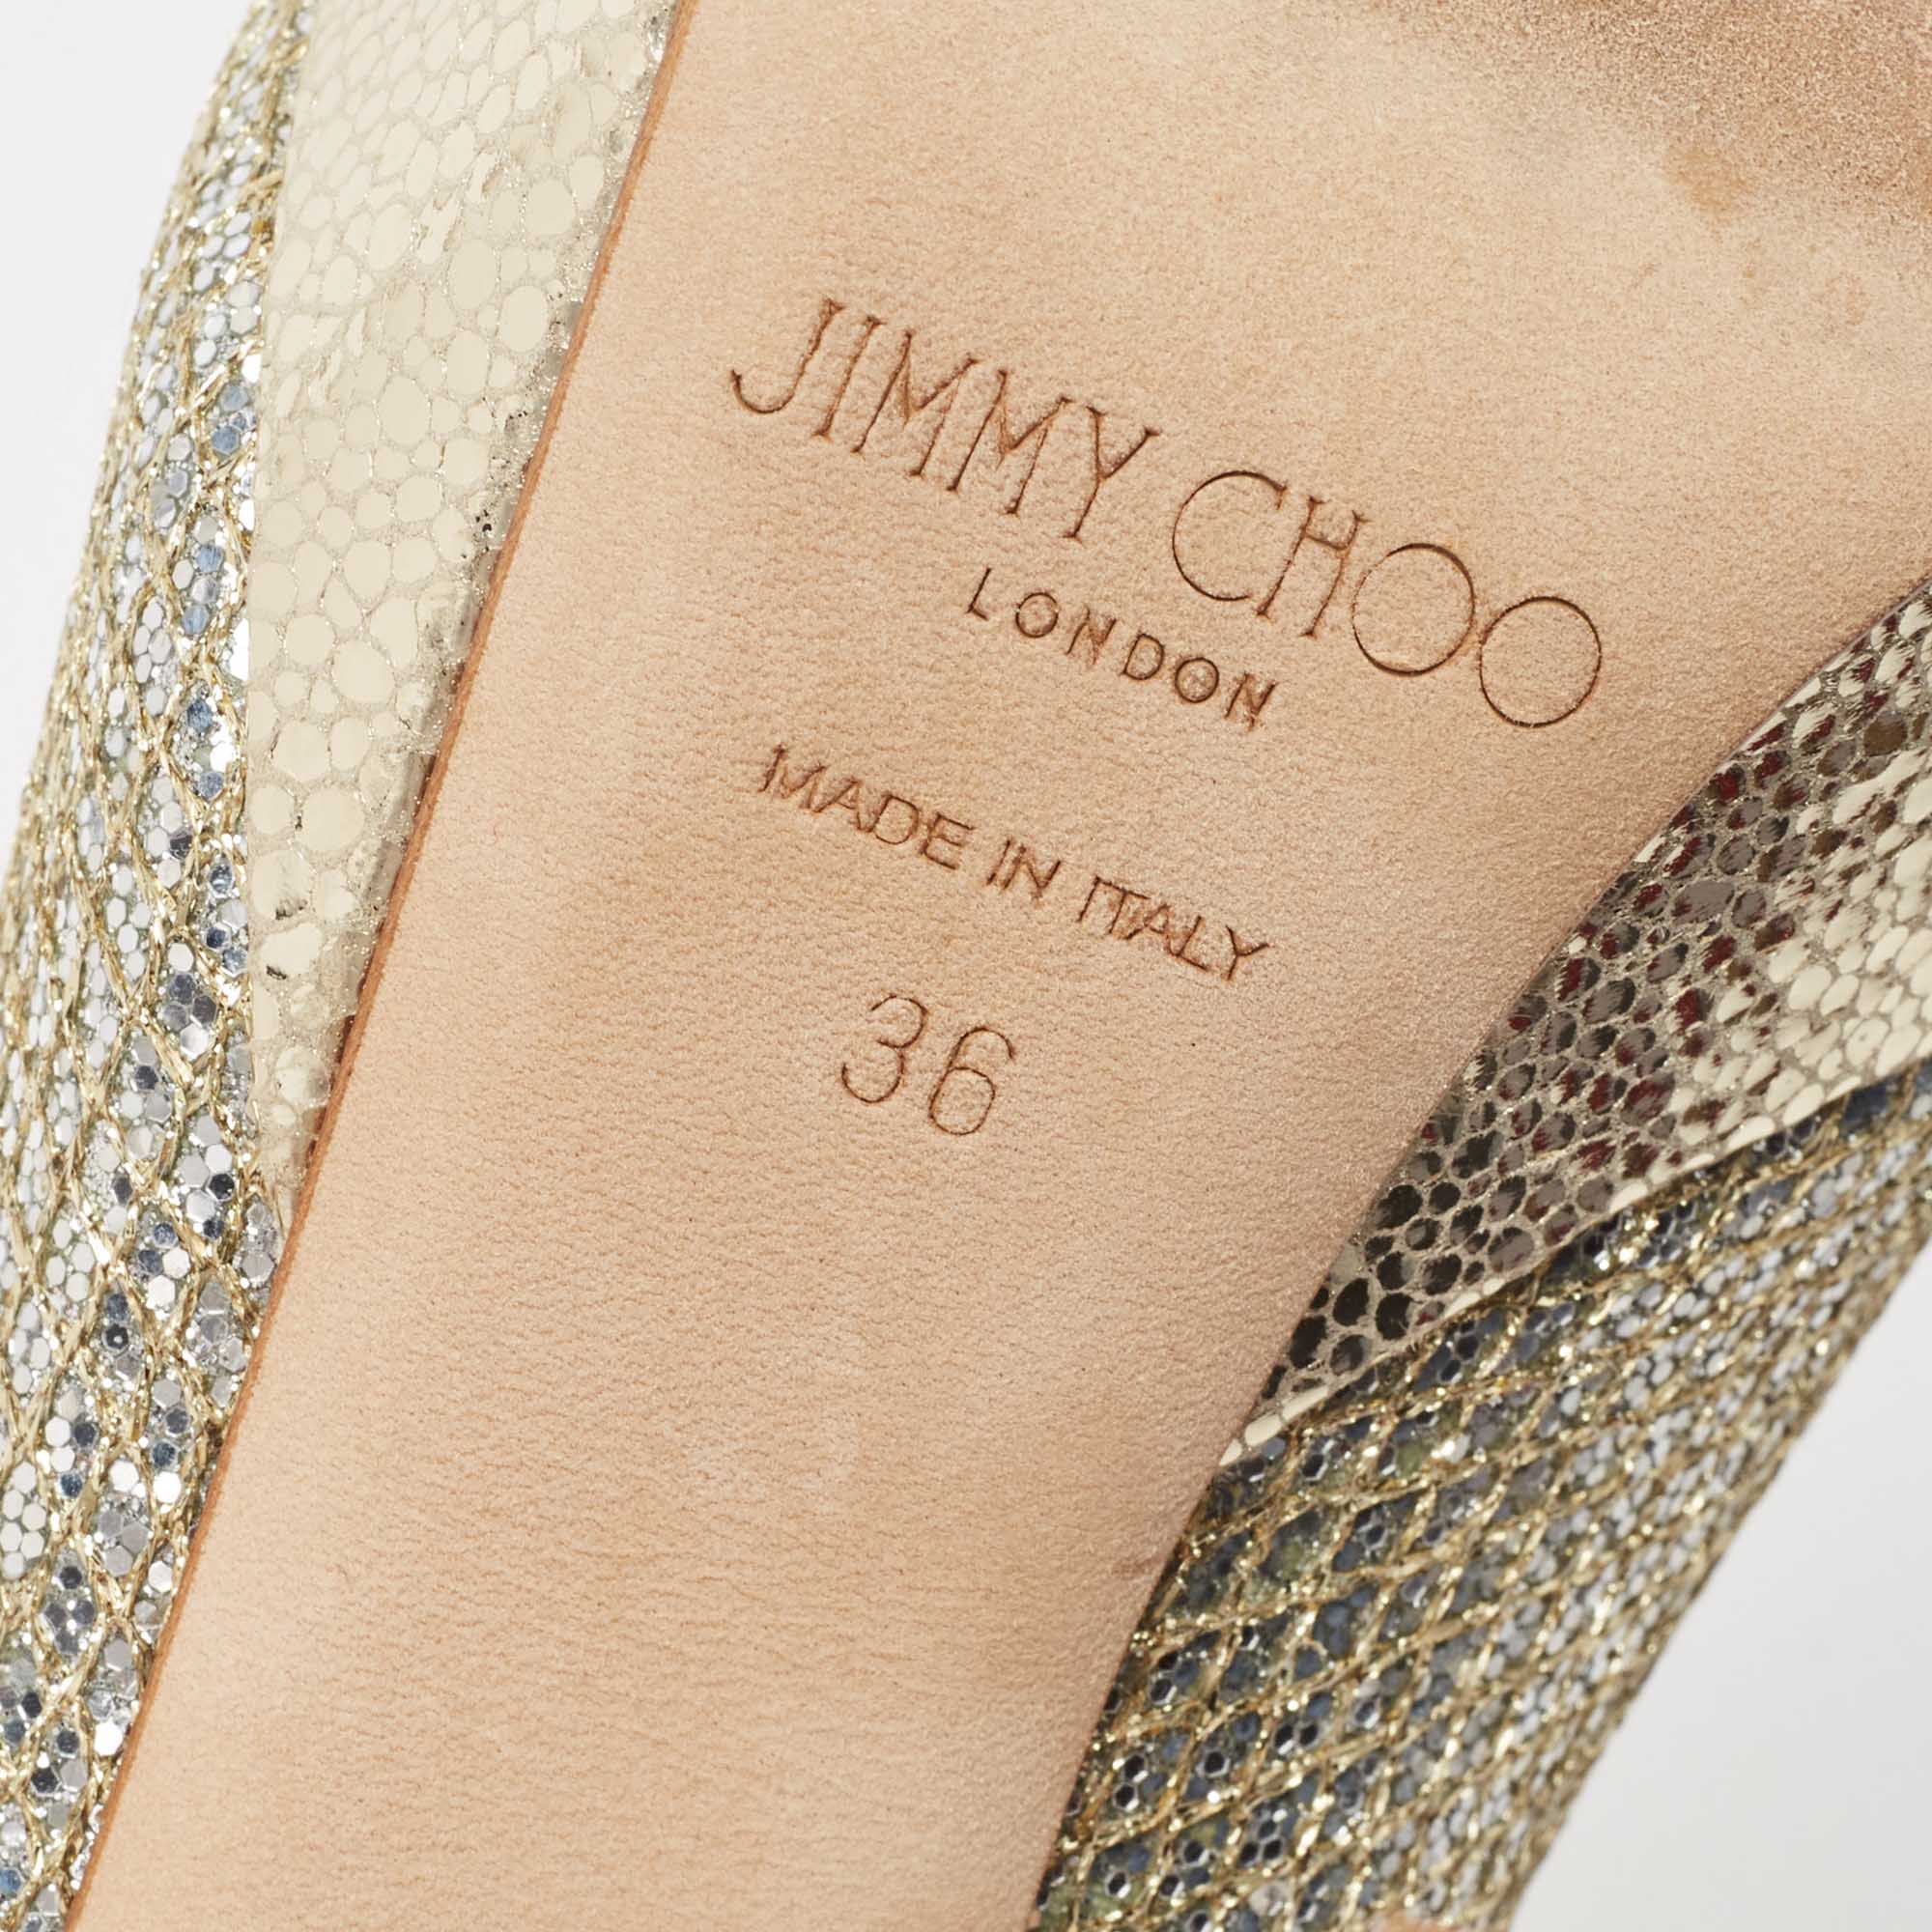 Jimmy Choo Silver/Gold Coarse Glitter Jeanette Pumps Size 36